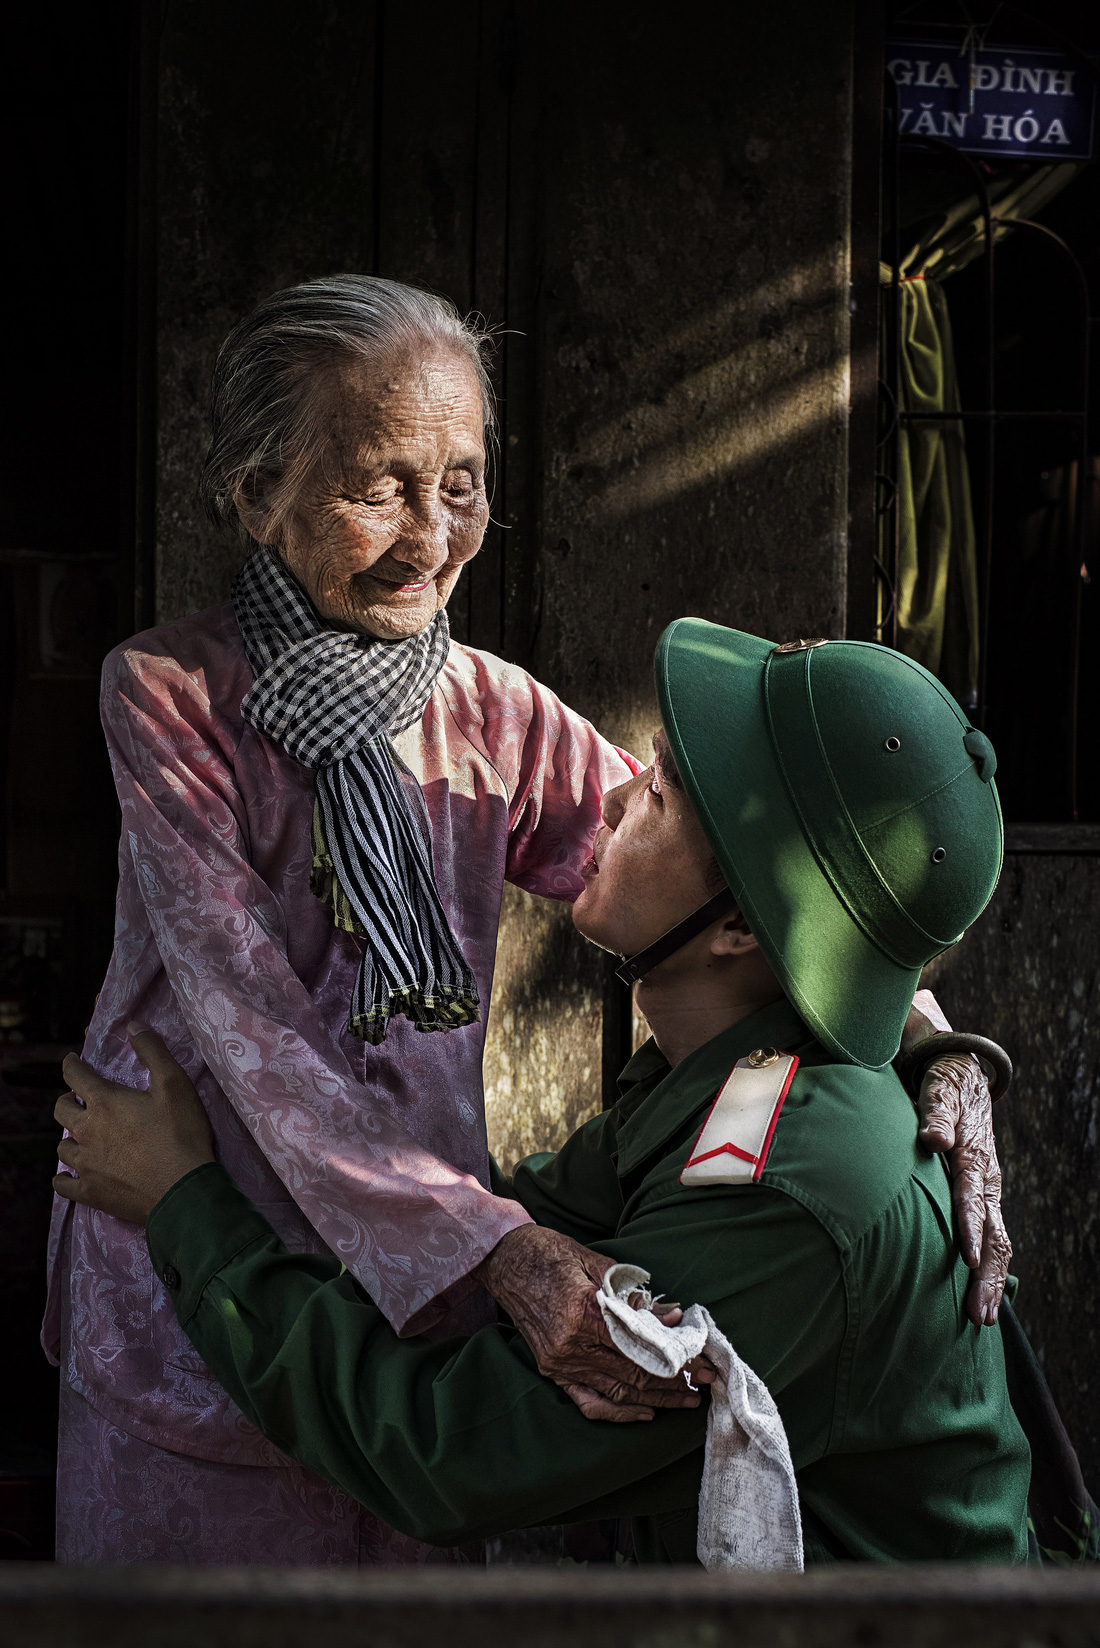 Ngắm những khoảnh khắc yêu thương gia đình ở khắp nẻo Việt Nam - Ảnh 7.